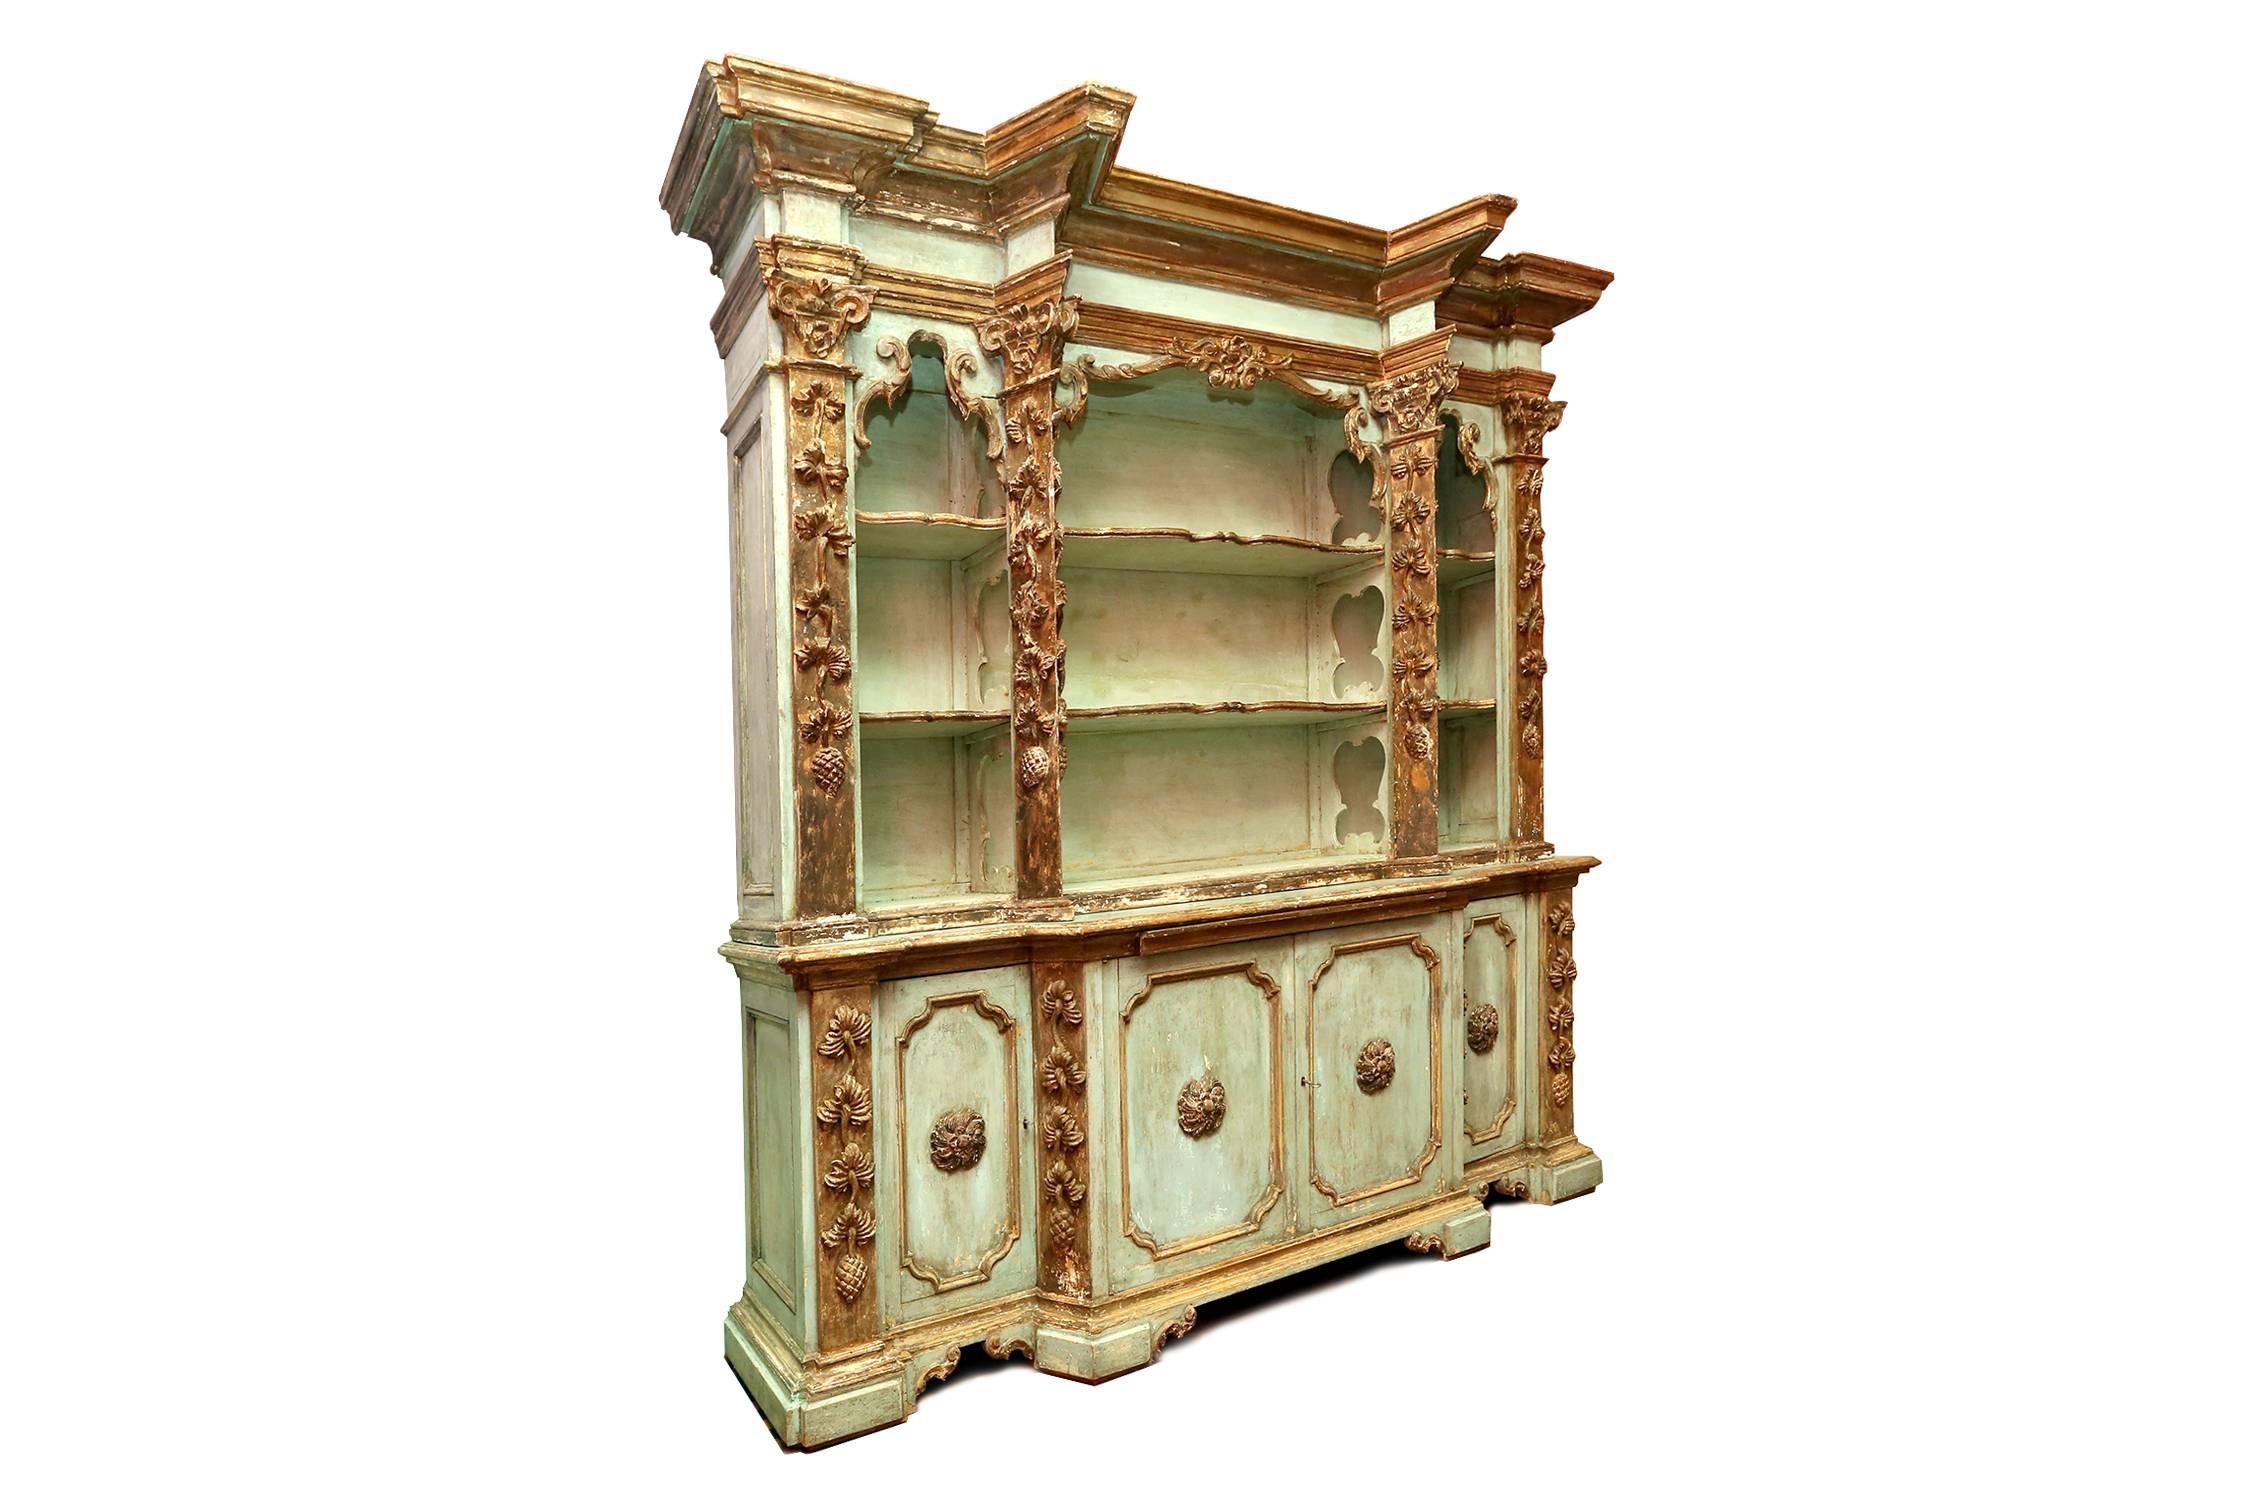 Antique amazing Baroque taste cupboard,
Italy, circa 1800.
Original paint and gilt.
Measures: W: 240 cm, H: 220° cm, D: 45 cm.